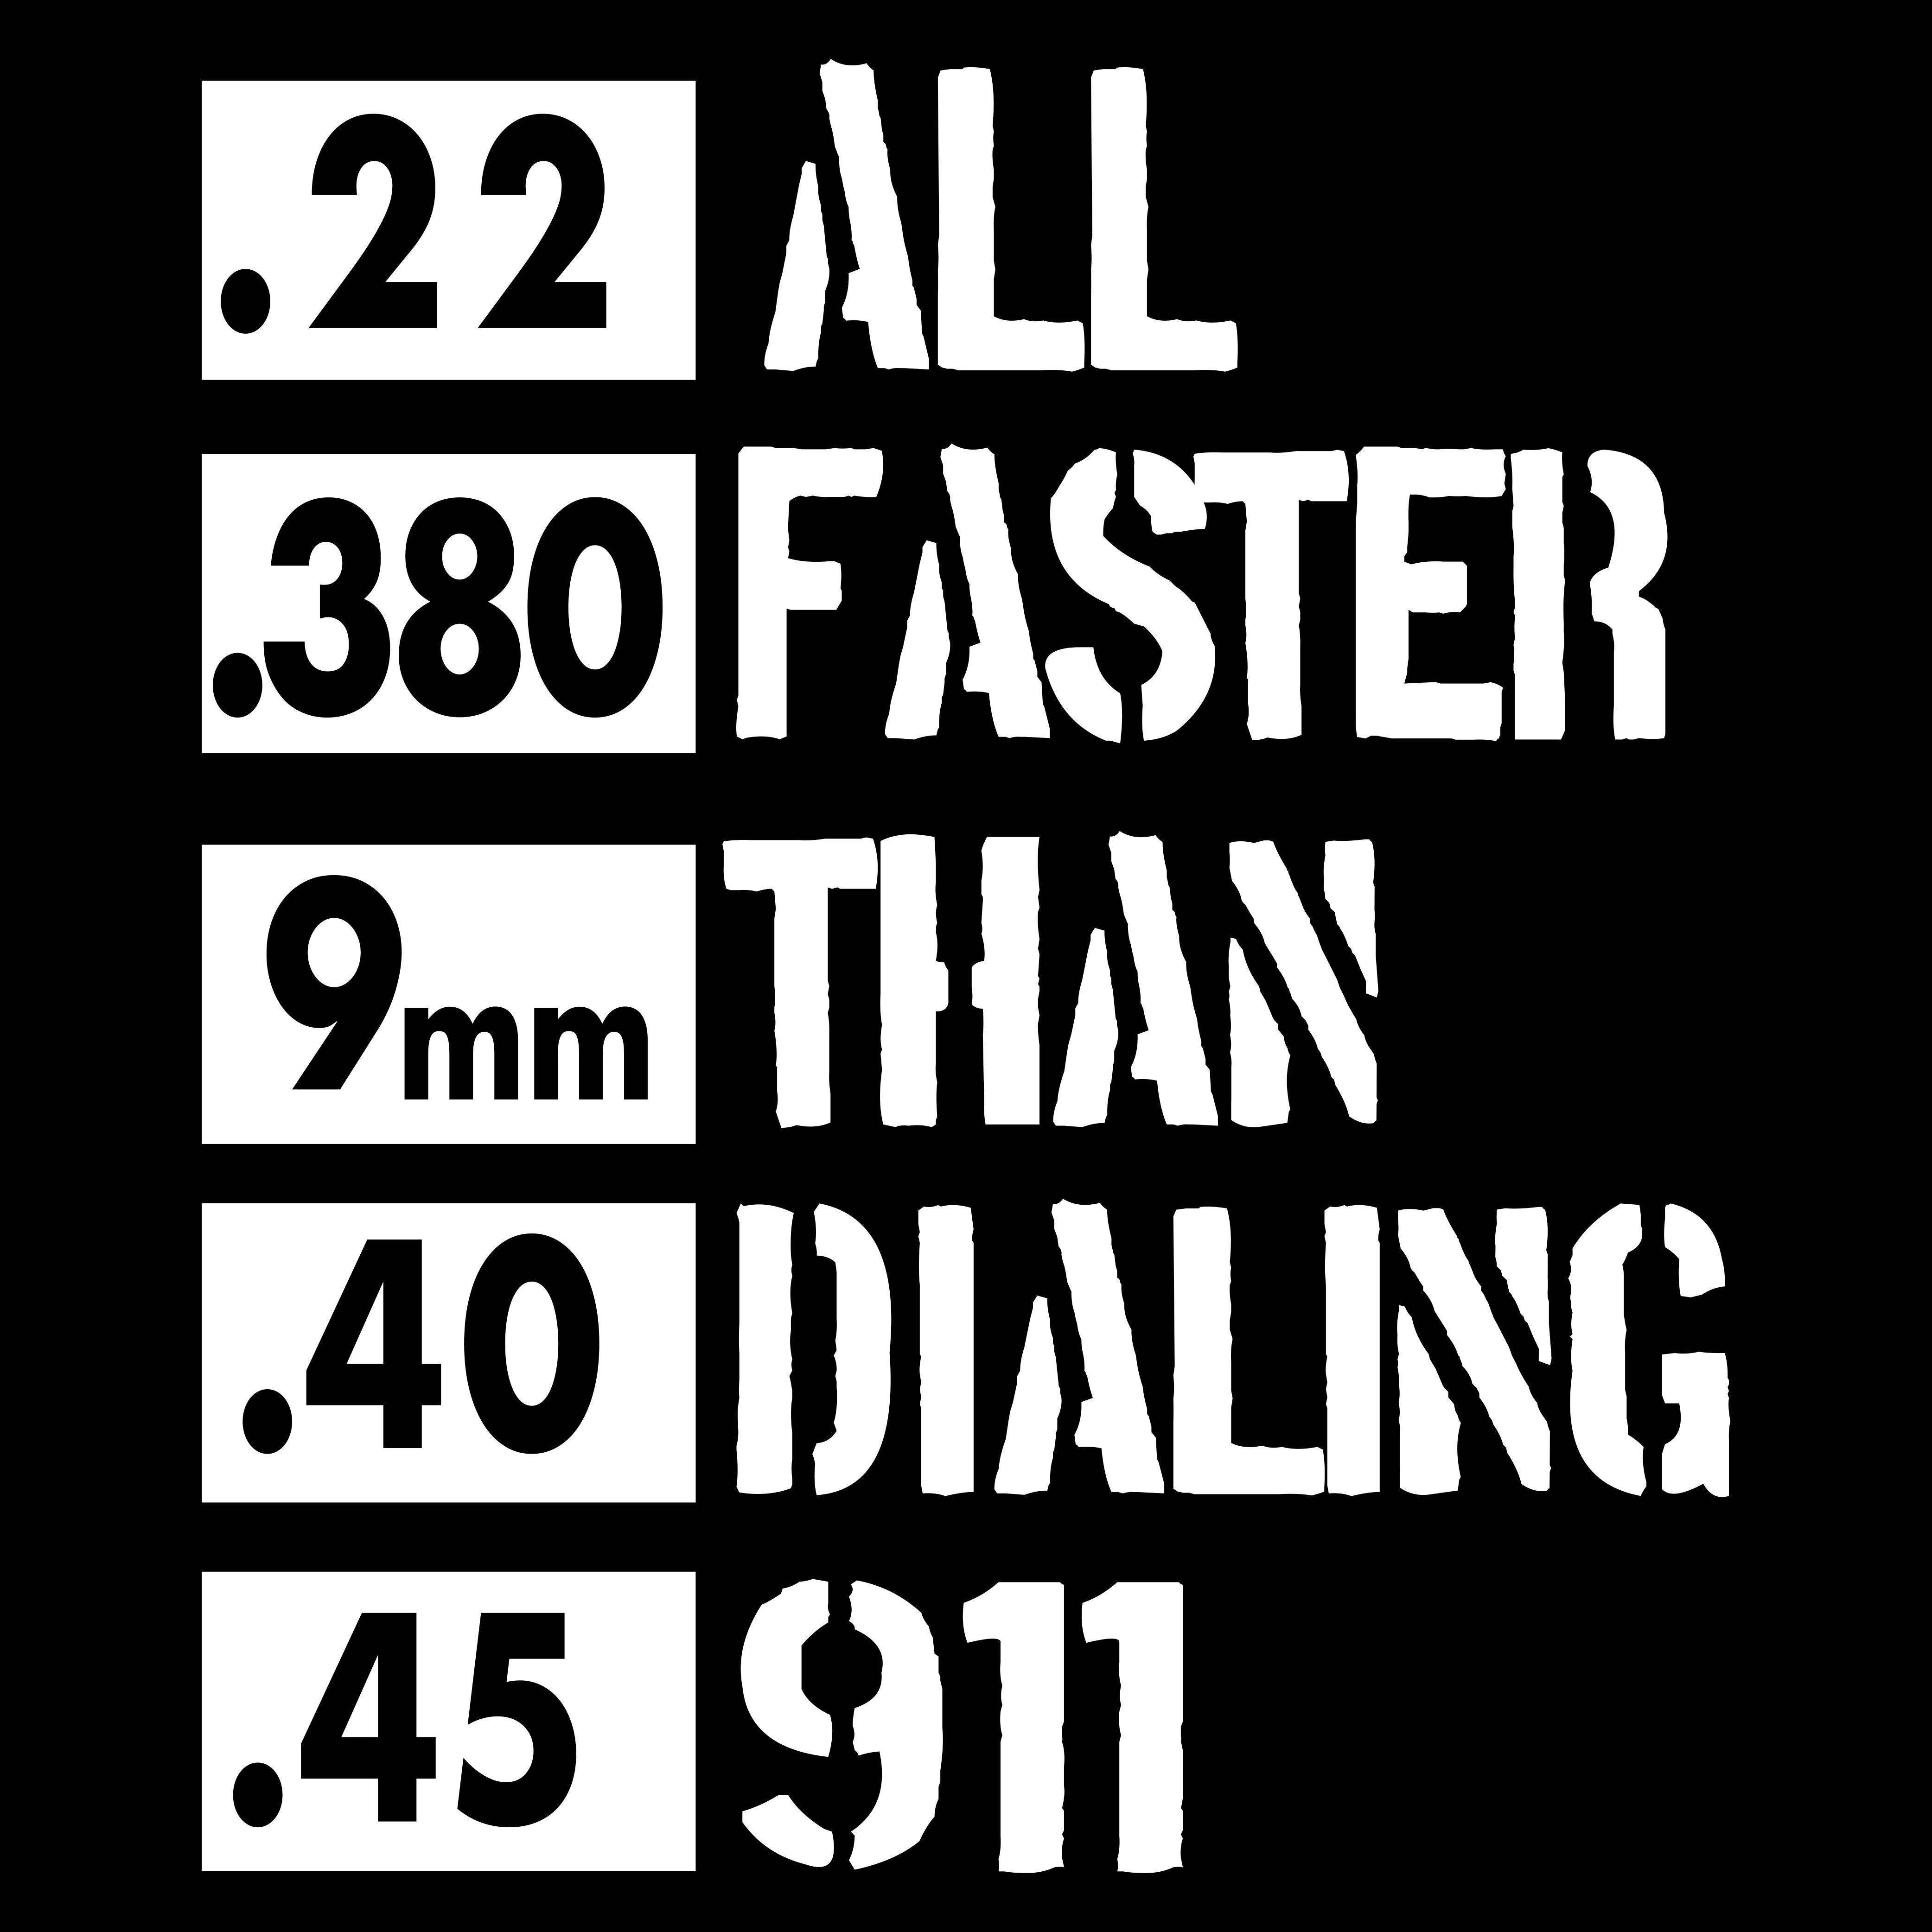 Faster Than Dialing 911 - PK - USA - 036